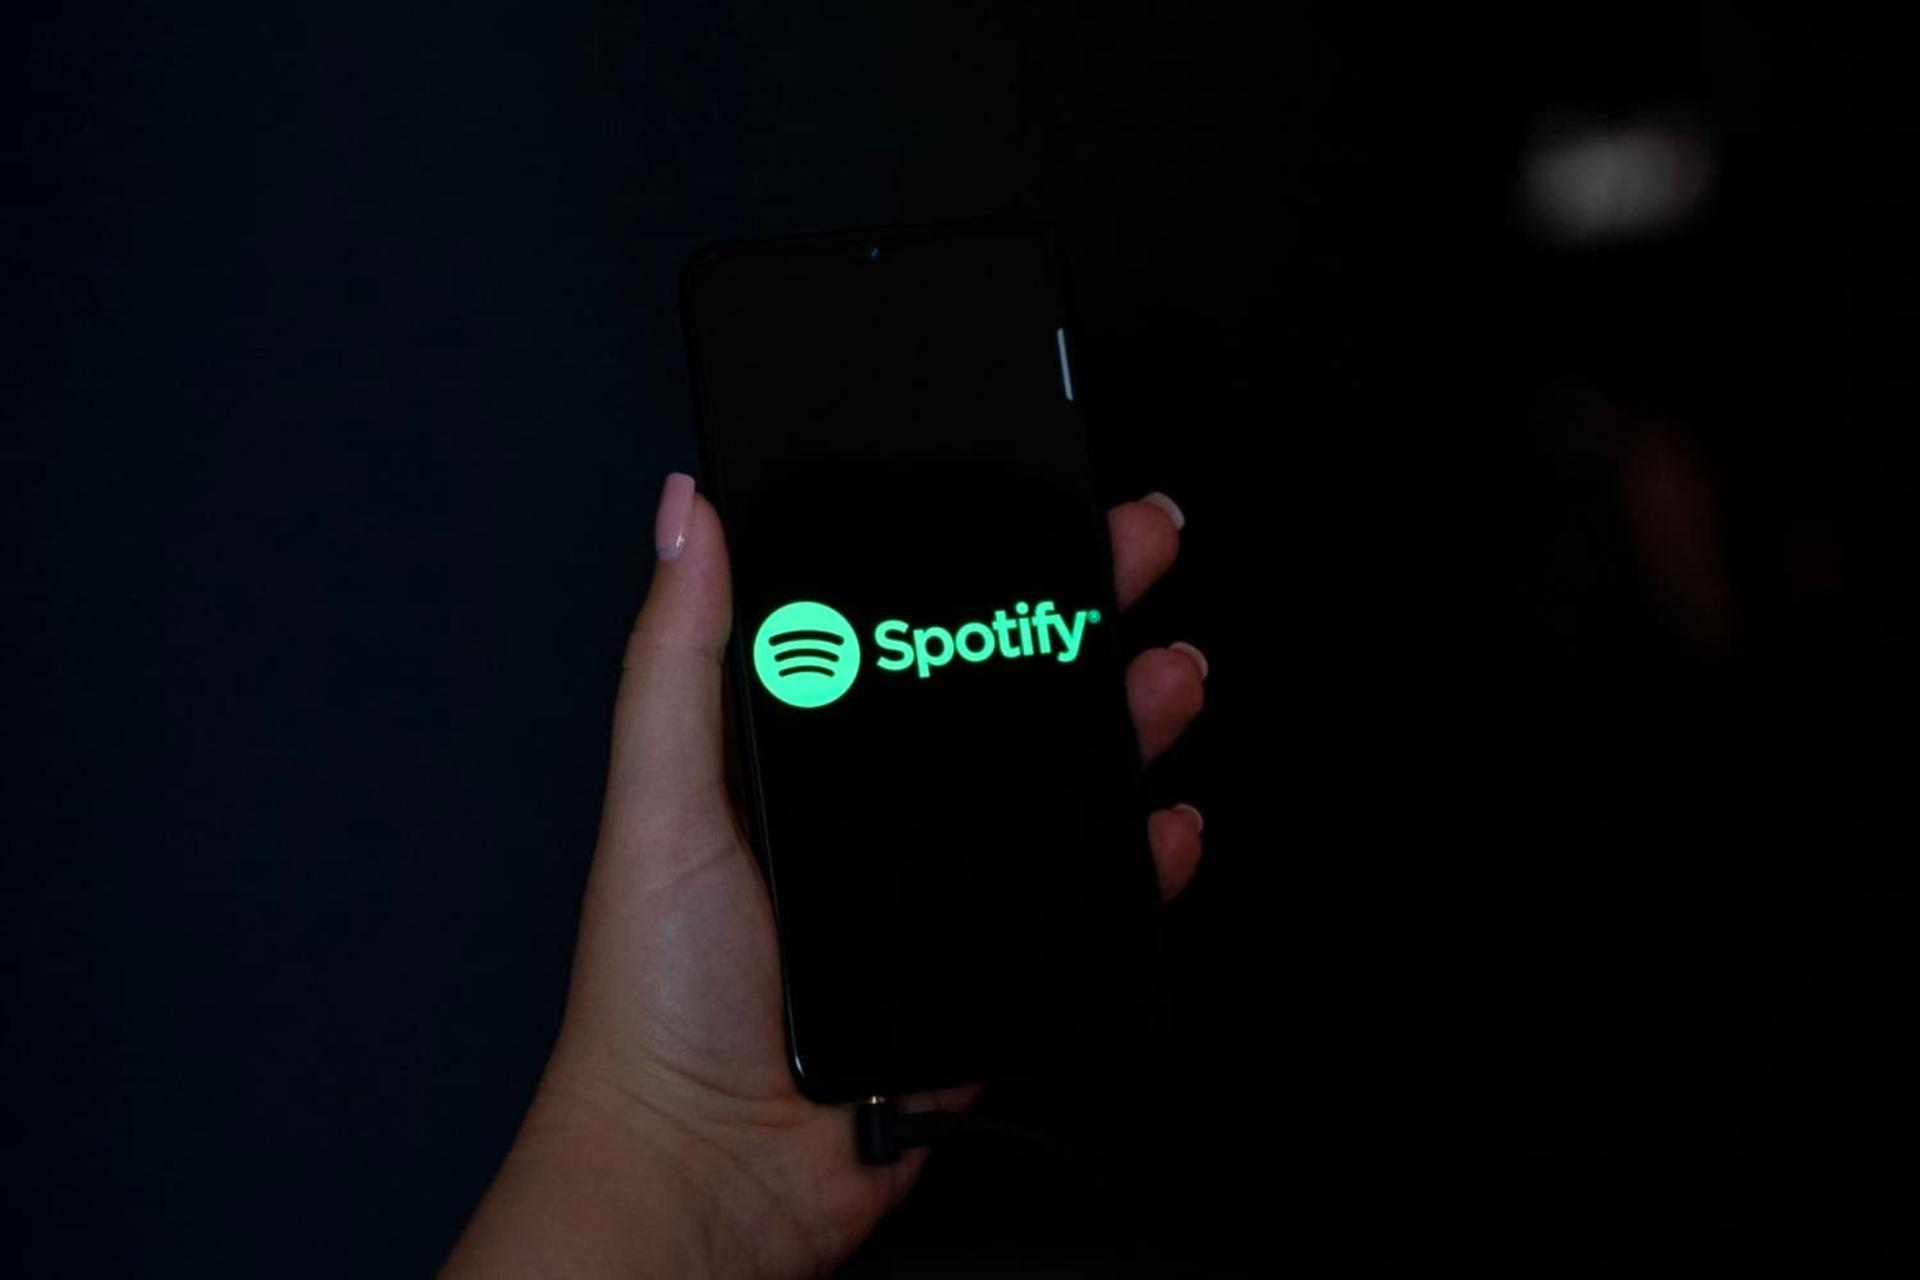 لوگو اسپاتیفای / Spotify / اسپاتی فای در موبایل در دست